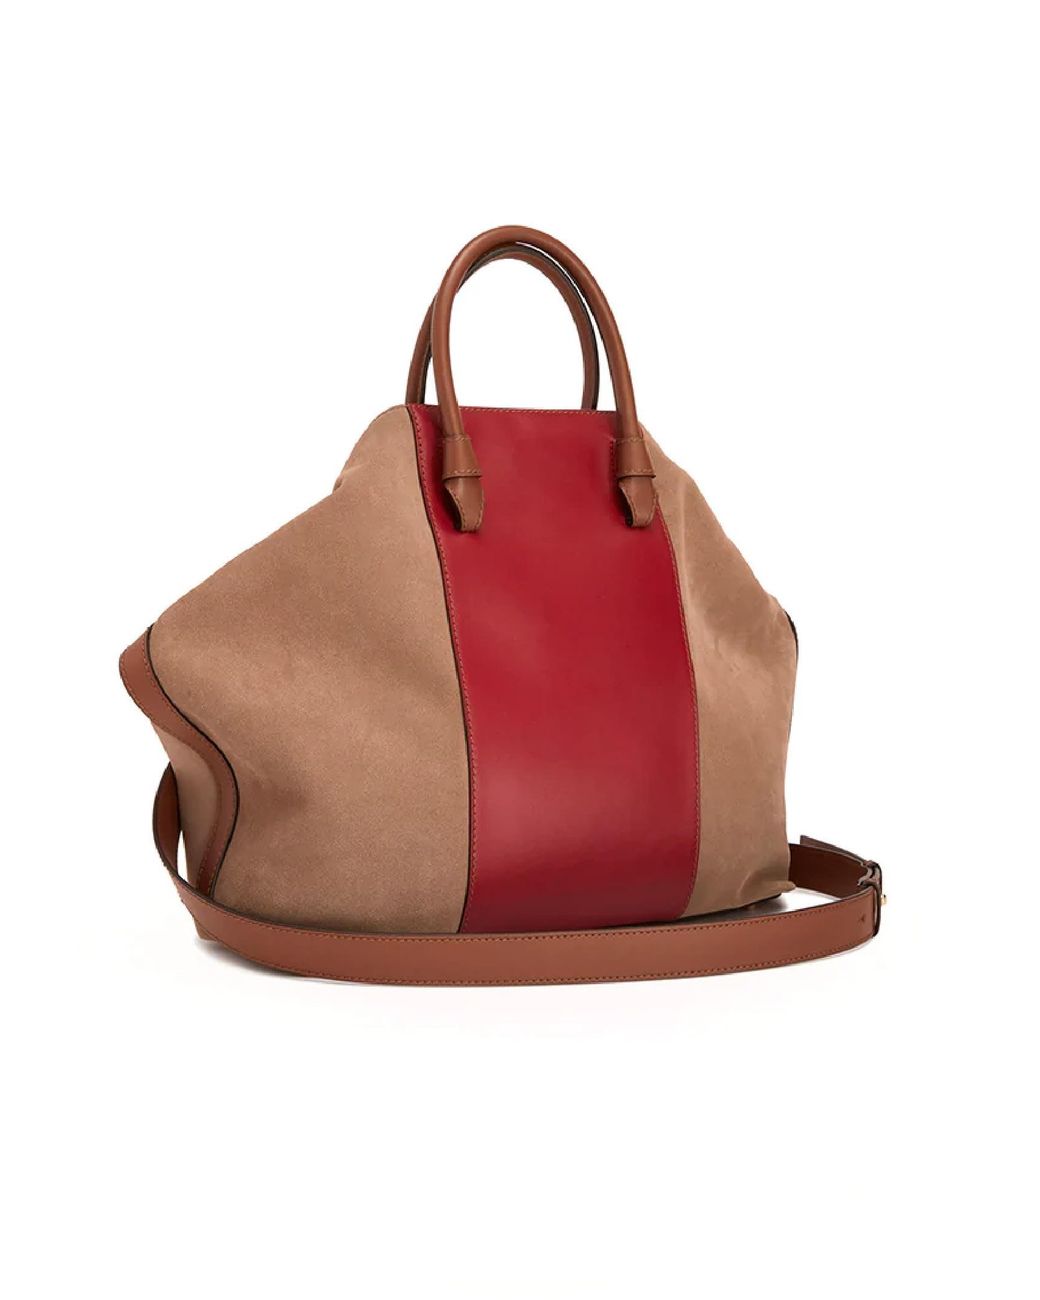 FURLA shoulder bag Miastella Tote Bag L, Buy bags, purses & accessories  online